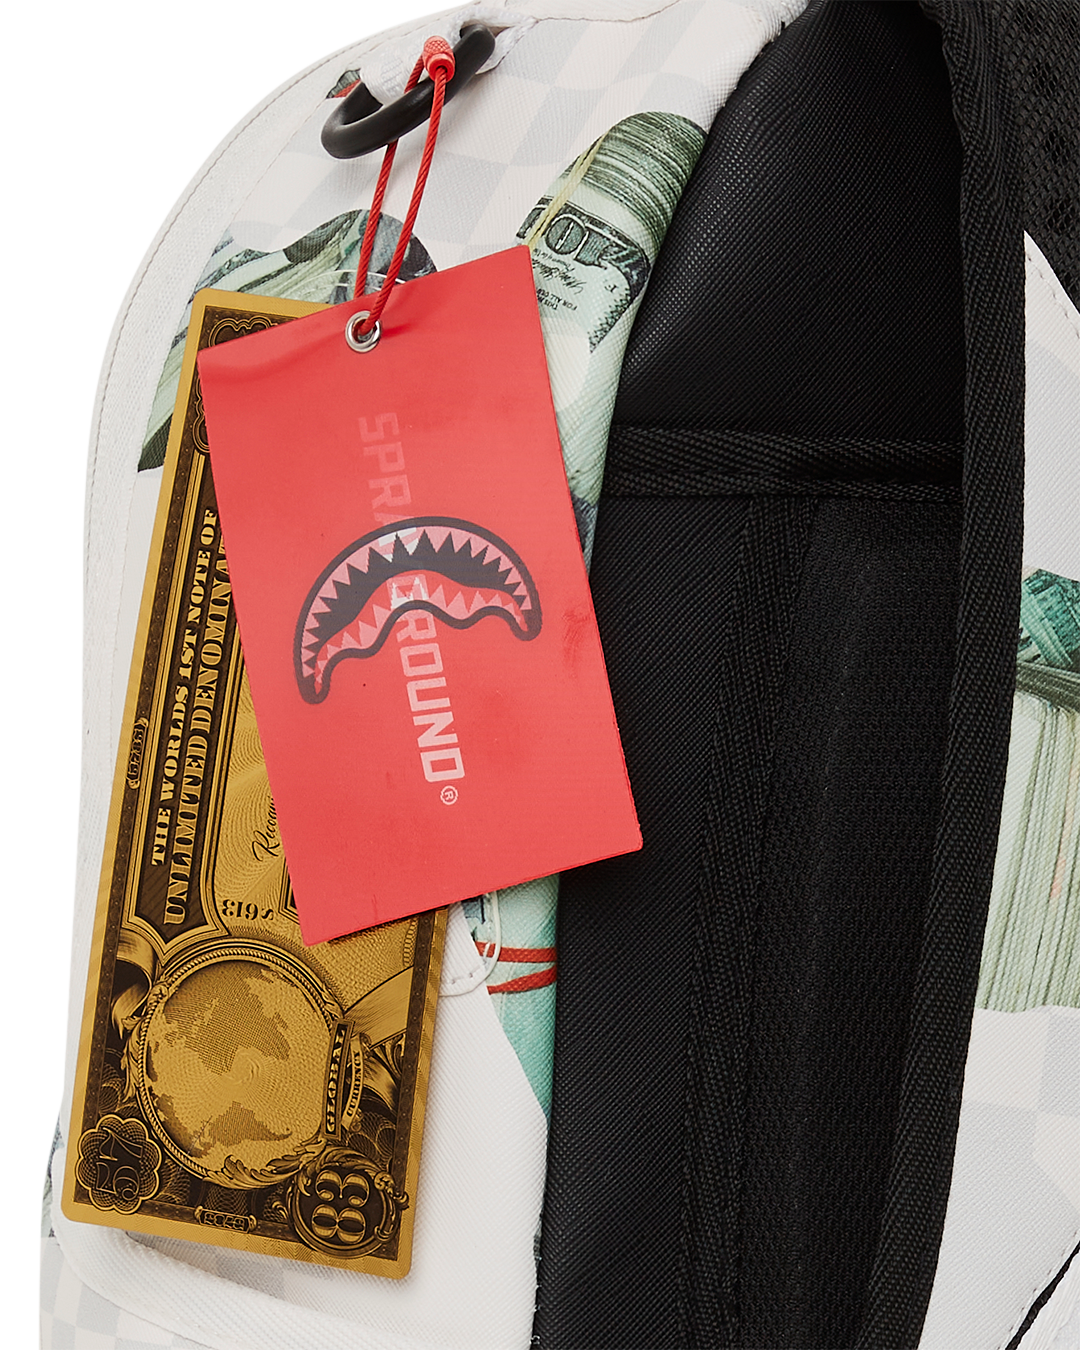 Sprayground Money 3AM White Backpack – Limited Edition - RunNWalk